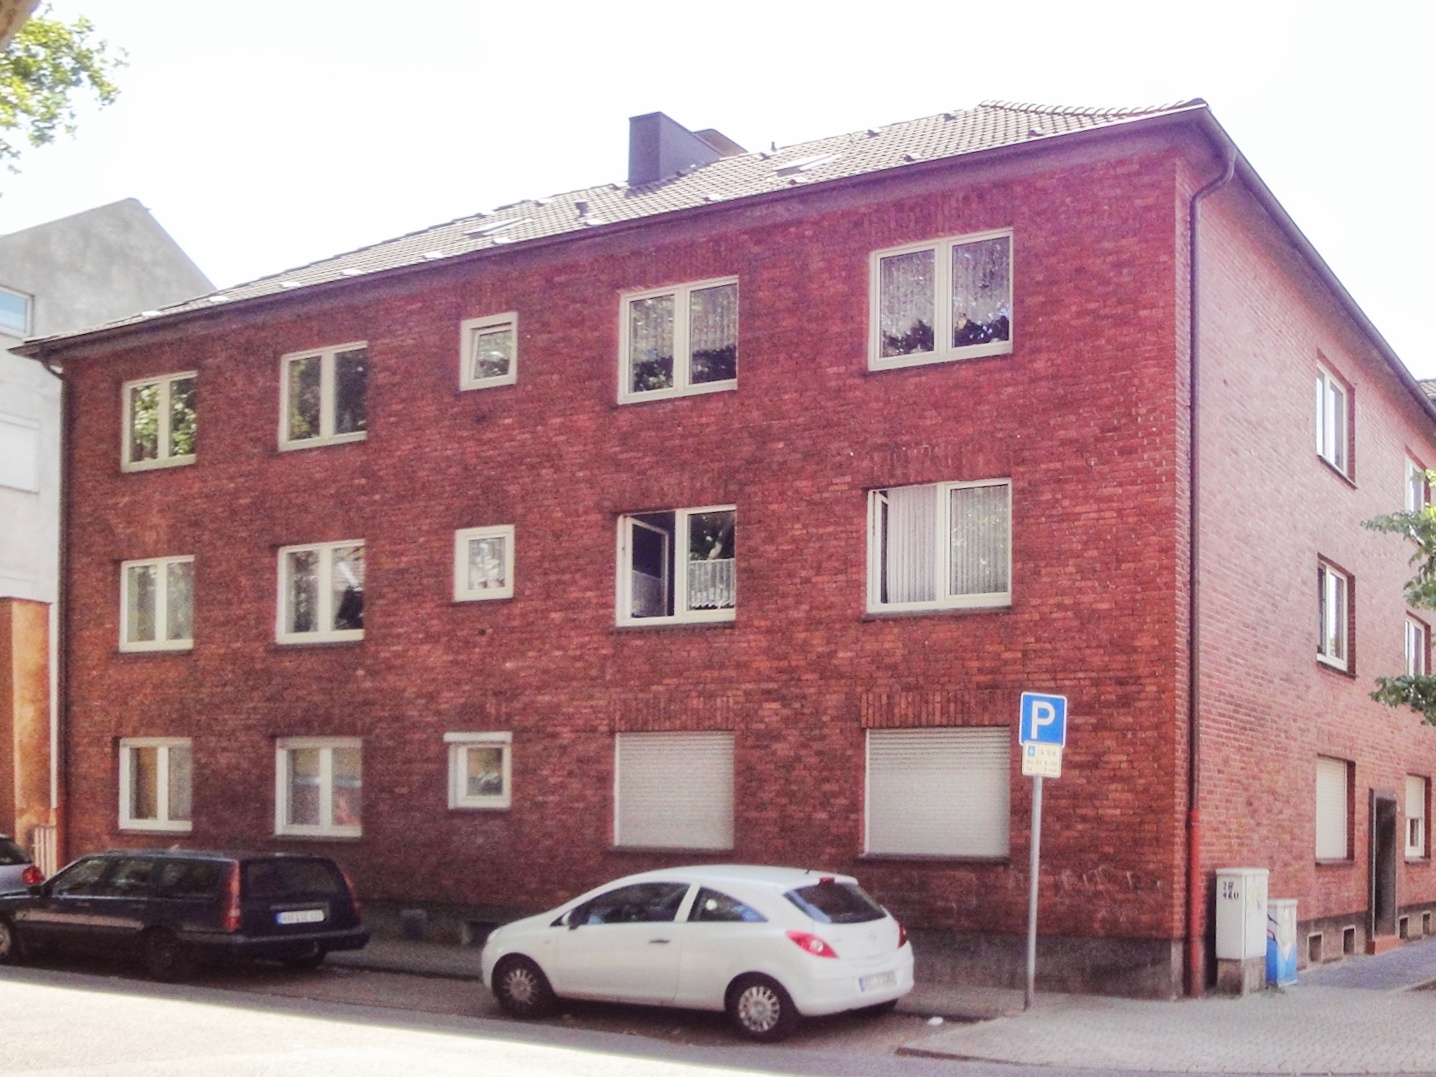 Immobilienmakler und Hausverwaltung Oberhausen - Bild eines Mehrfamilienhauses in Oberhausen, an einer Kreuzung, über Ecke aufgenommen mit roten Ziegel.